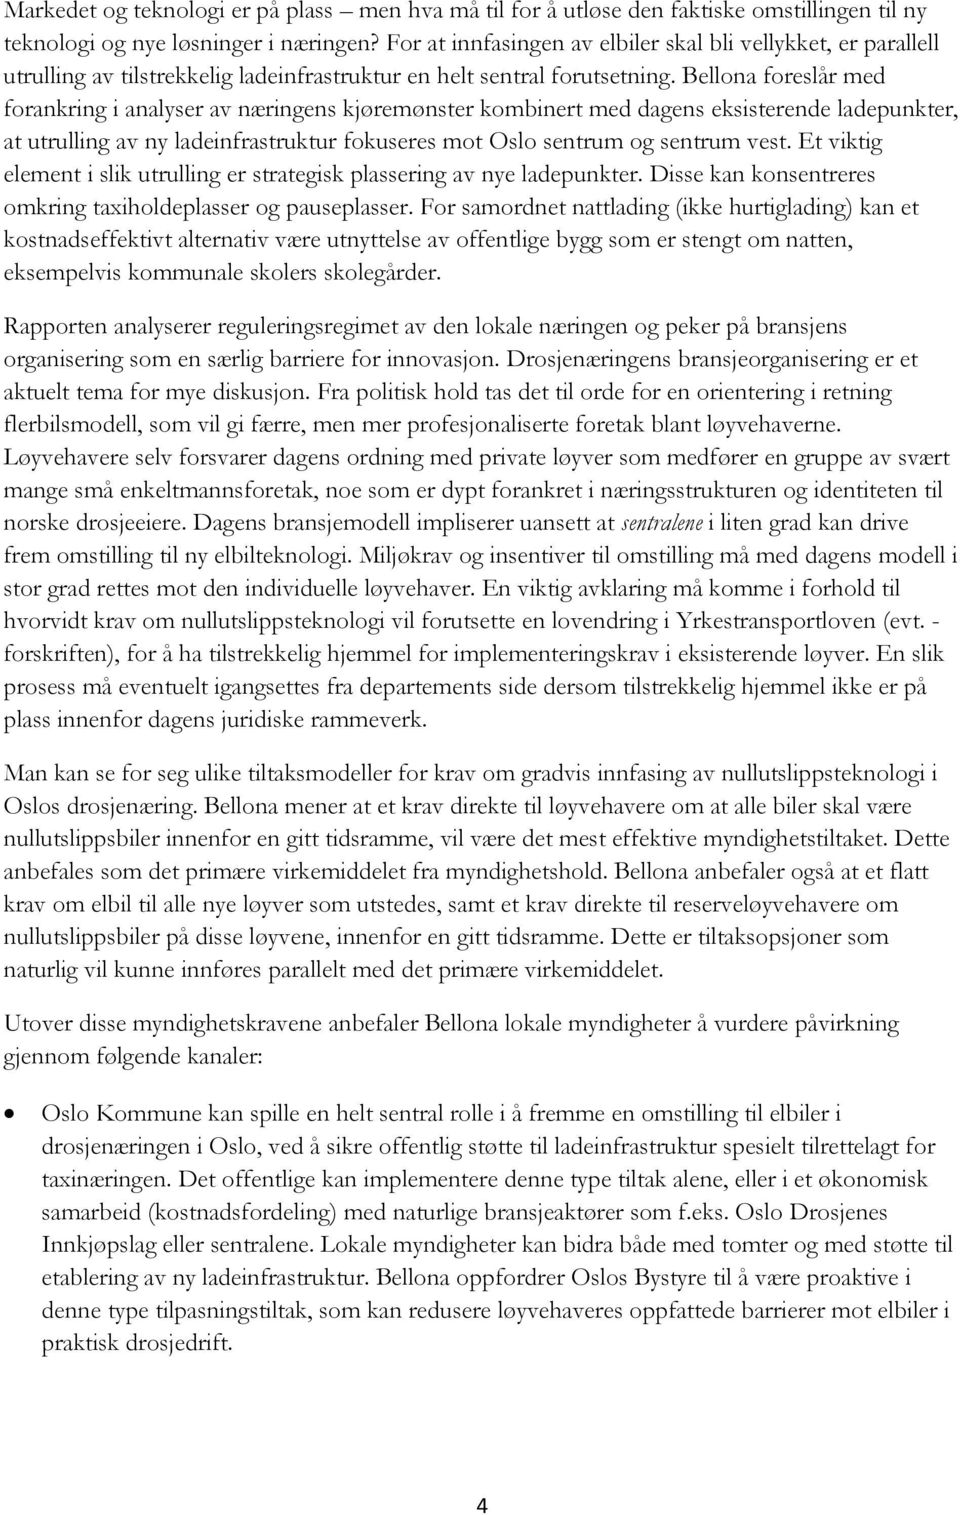 Bellona foreslår med forankring i analyser av næringens kjøremønster kombinert med dagens eksisterende ladepunkter, at utrulling av ny ladeinfrastruktur fokuseres mot Oslo sentrum og sentrum vest.